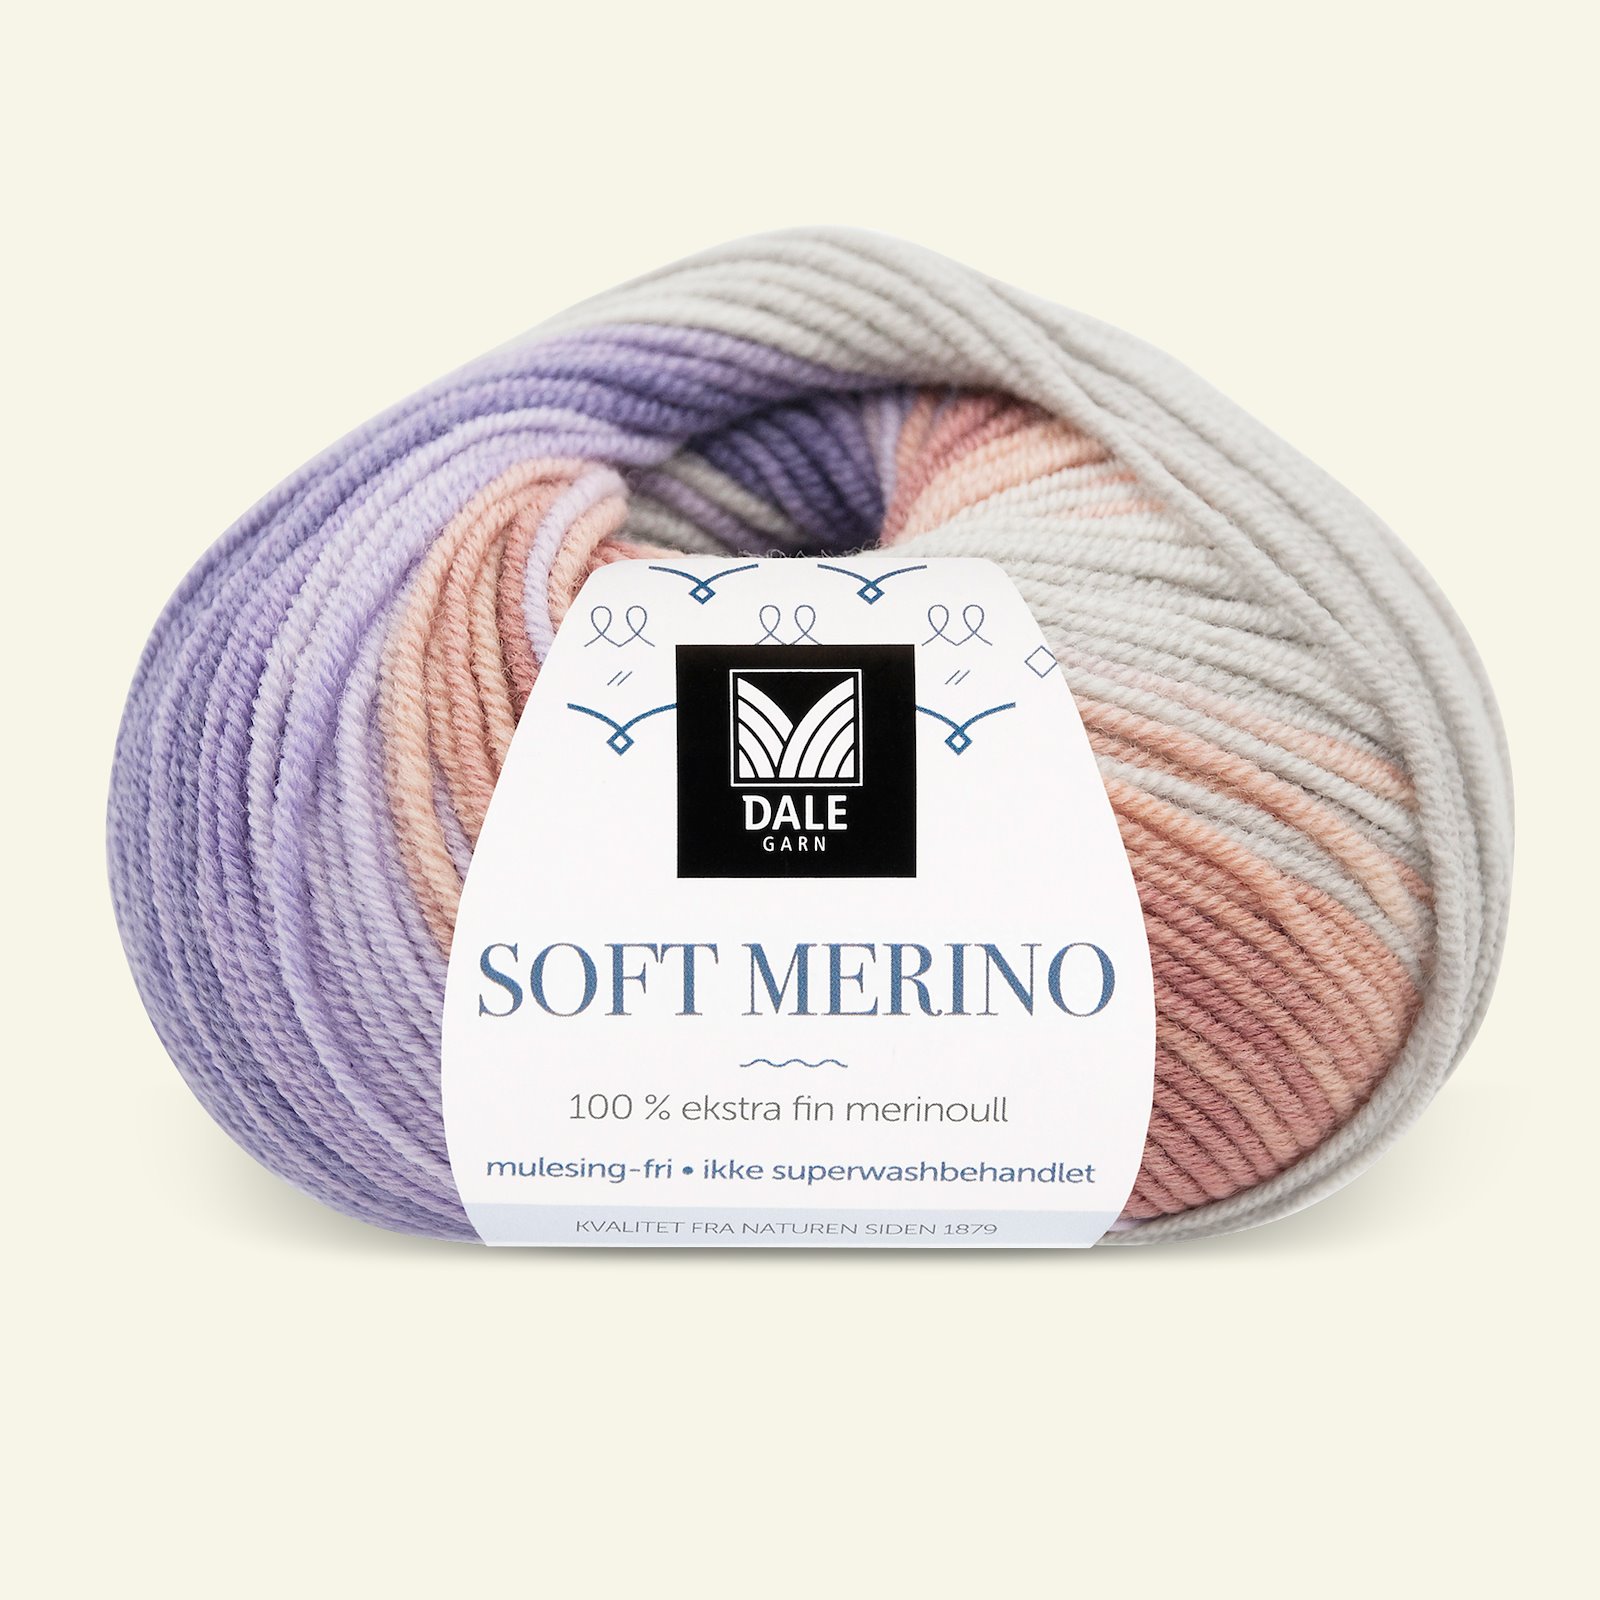 Dale Garn, 100% Extrafeine Merino-Wolle "Soft Merino", purple printed 90001222_pack